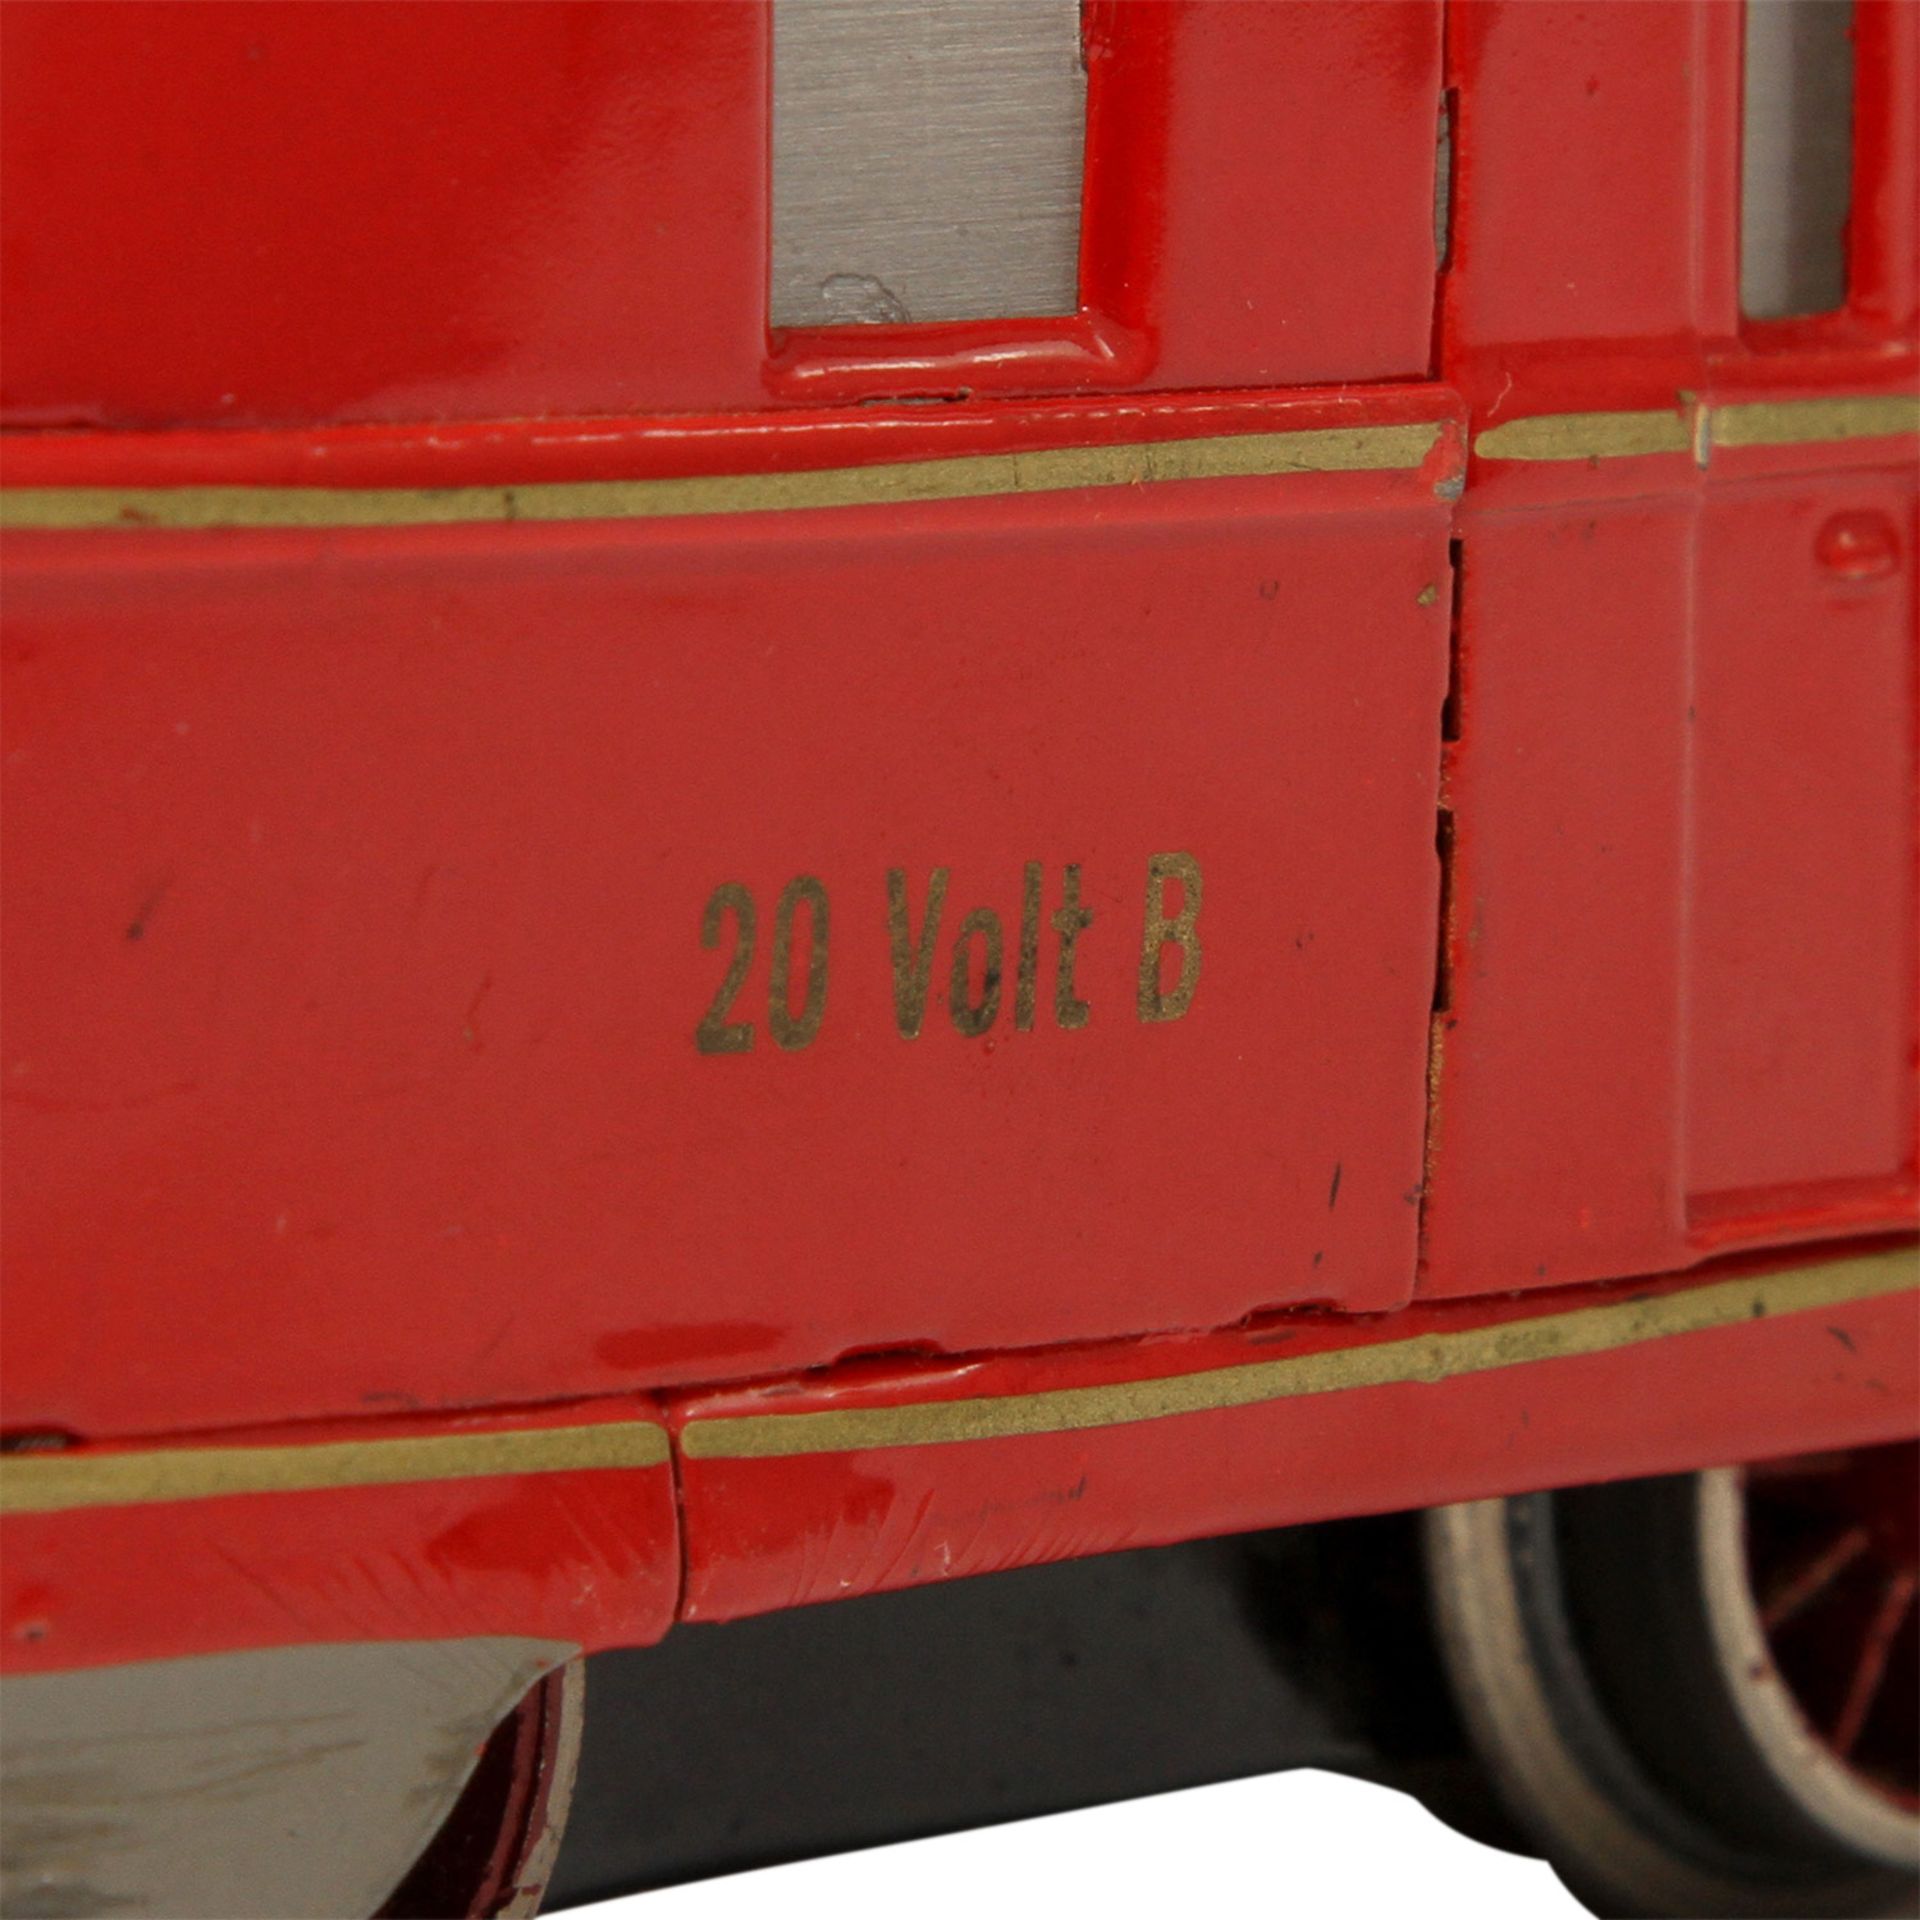 MÄRKLIN Schnelltriebwagen TW 66/12940/3 PR, Spur 0, 1937-1939, Blech, rot lack., 3-teilig, 8-achsig, - Bild 22 aus 32